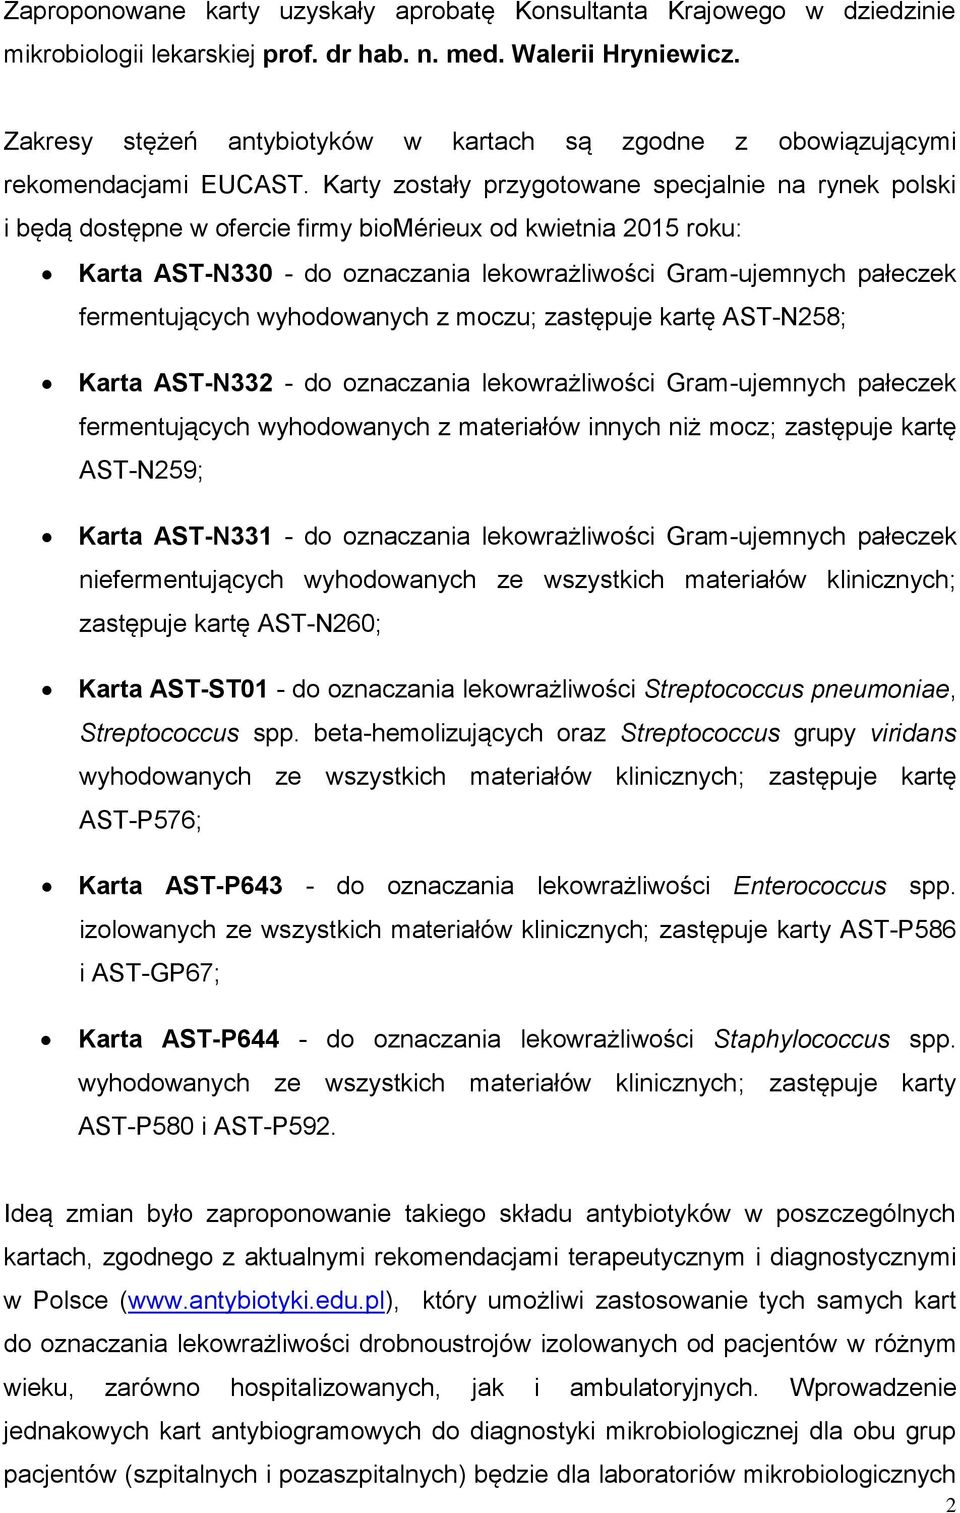 Karty zostały przygotowane specjalnie na rynek polski i będą dostępne w ofercie firmy biomérieux od kwietnia 2015 roku: Karta AST-N330 - do oznaczania lekowrażliwości Gram-ujemnych pałeczek